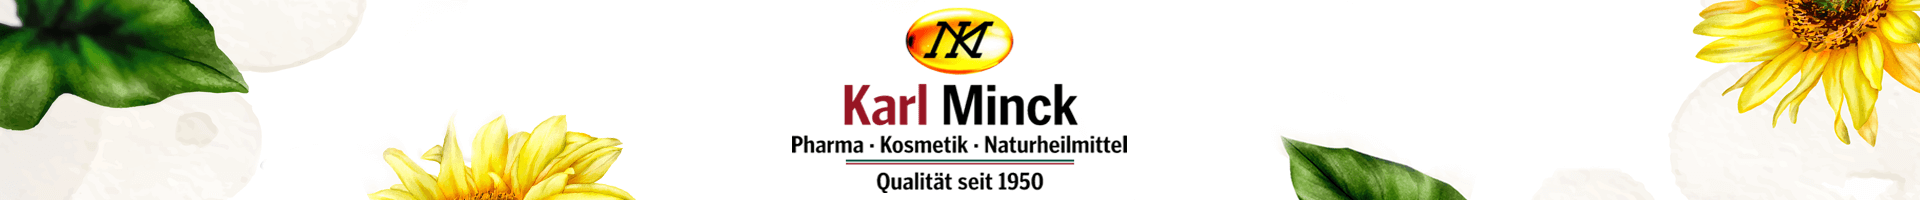 Karl Minck logo